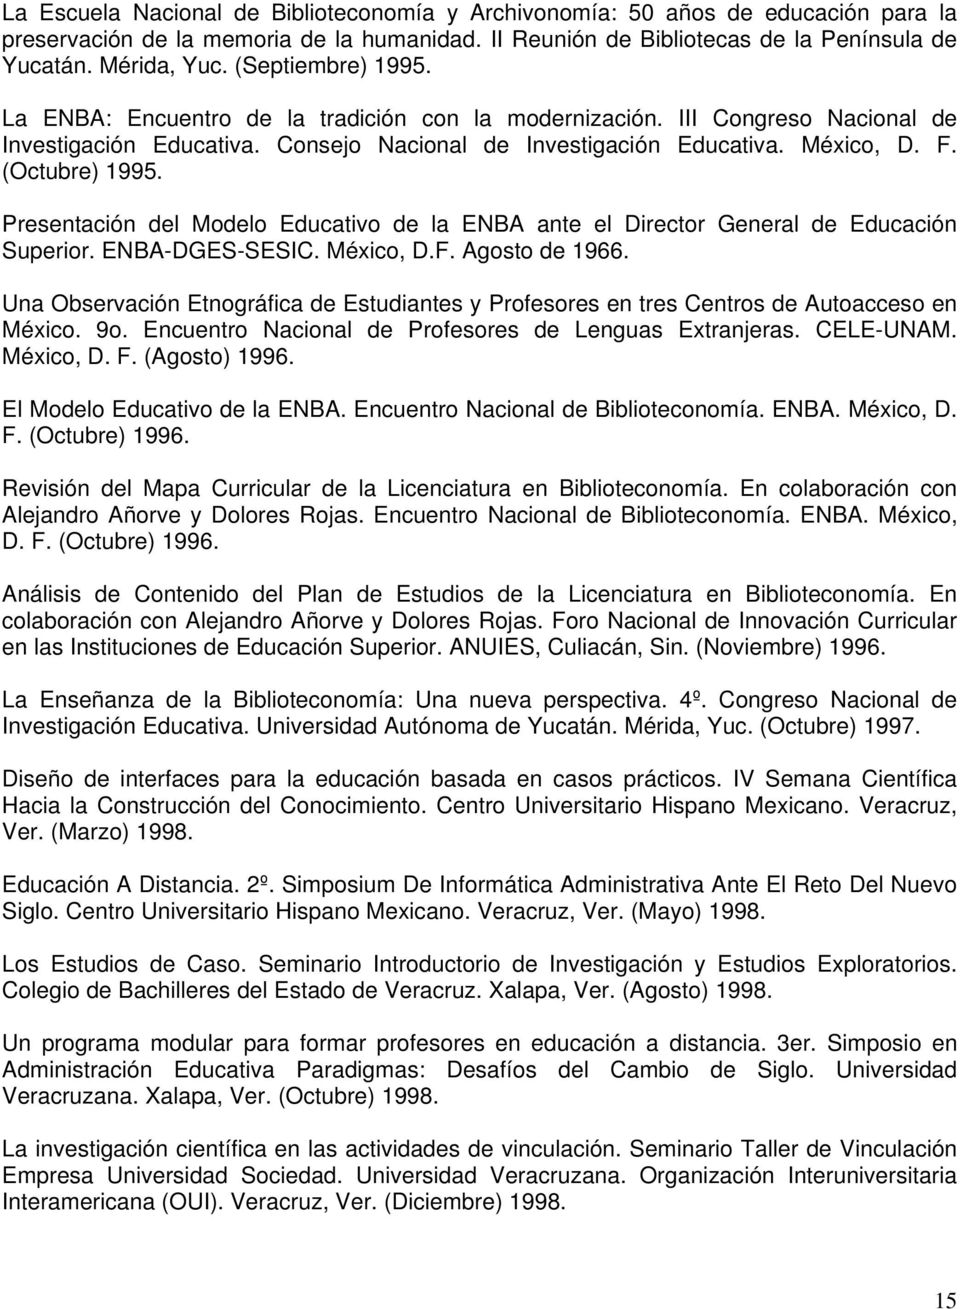 Presentación del Modelo Educativo de la ENBA ante el Director General de Educación Superior. ENBA-DGES-SESIC. México, D.F. Agosto de 1966.